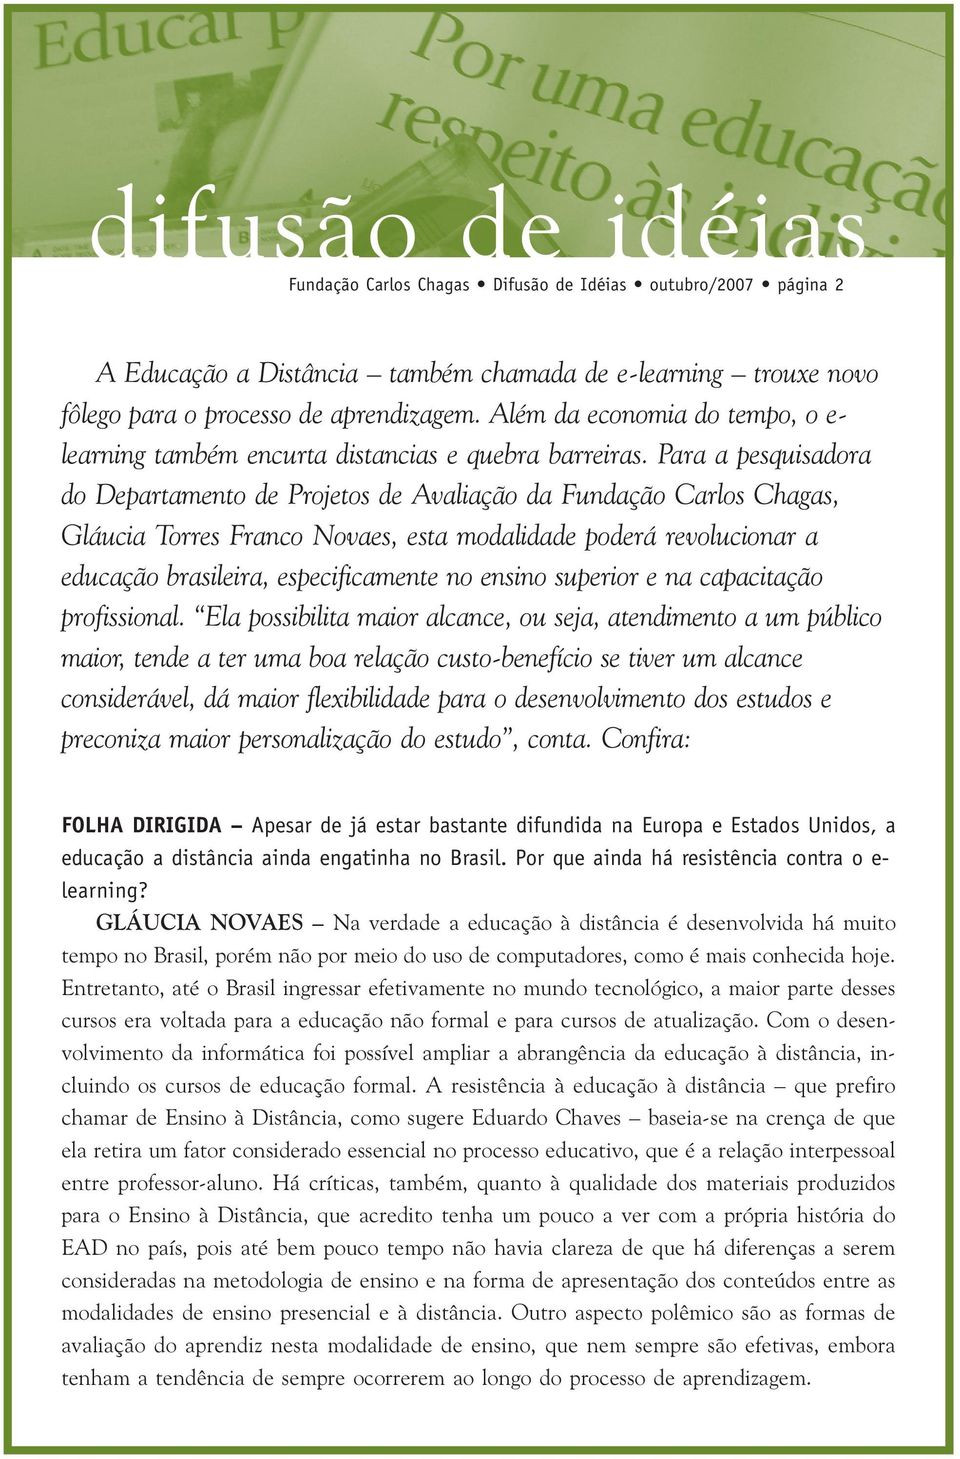 Para a pesquisadora do Departamento de Projetos de Avaliação da Fundação Carlos Chagas, Gláucia Torres Franco Novaes, esta modalidade poderá revolucionar a educação brasileira, especificamente no